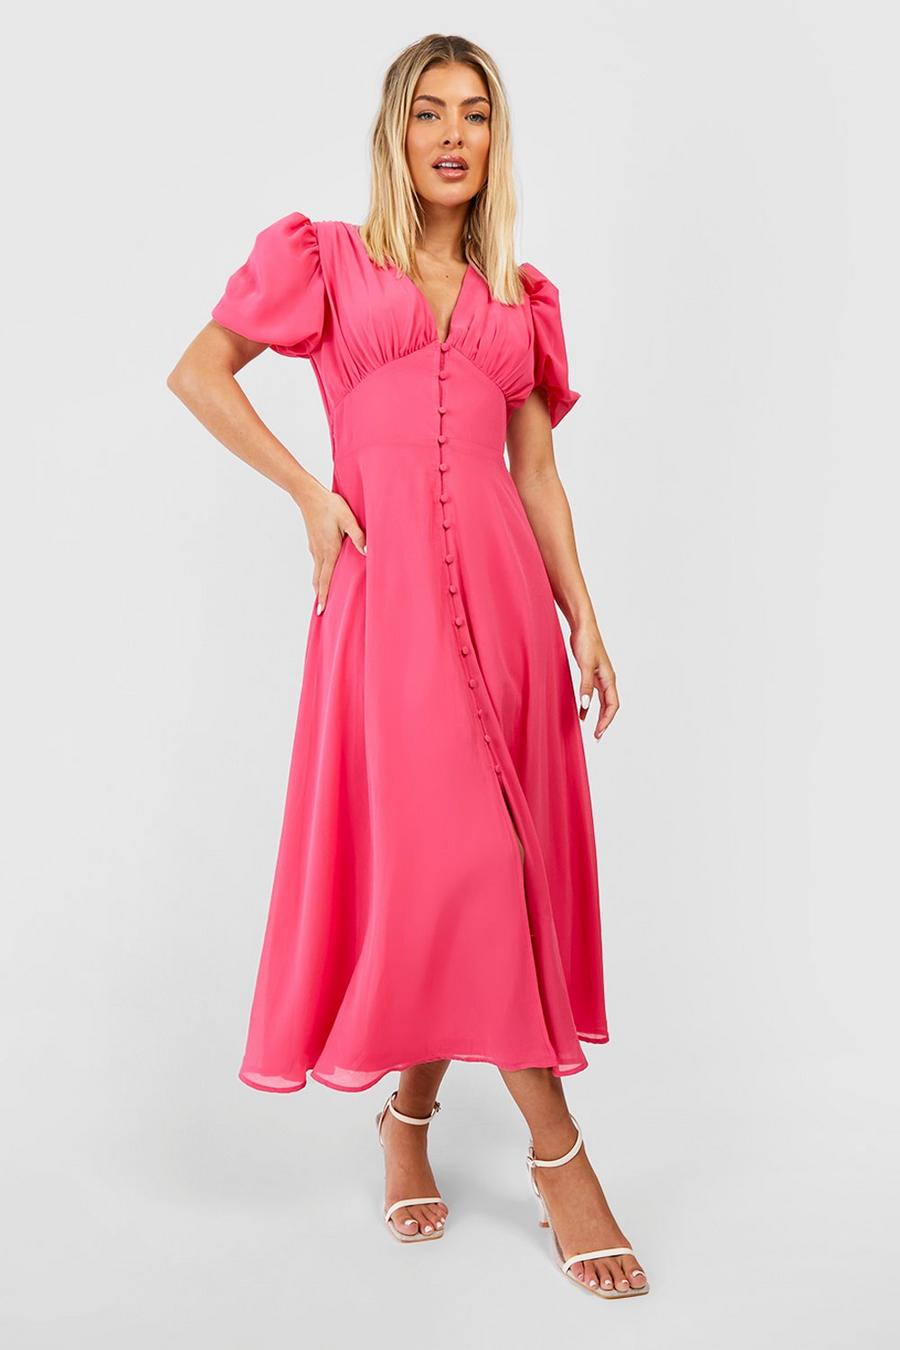 Hot pink Midiklänning med knappar och puffärm